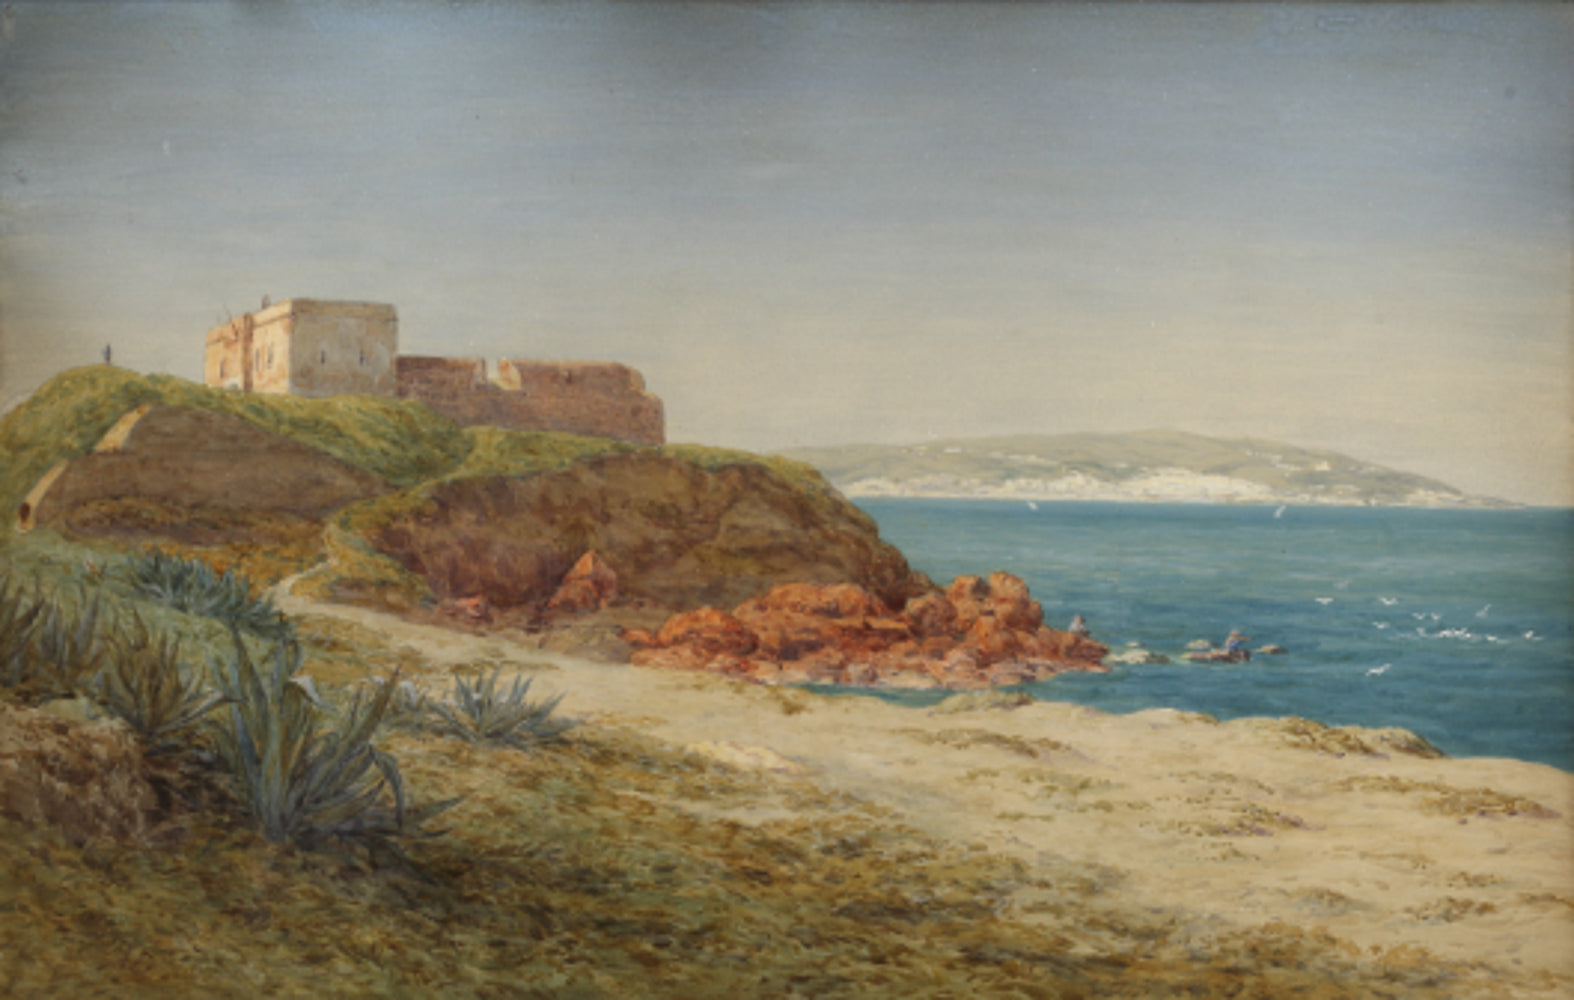 'Fort de l'eau, Bay of Algiers' Arthur Ditchfield